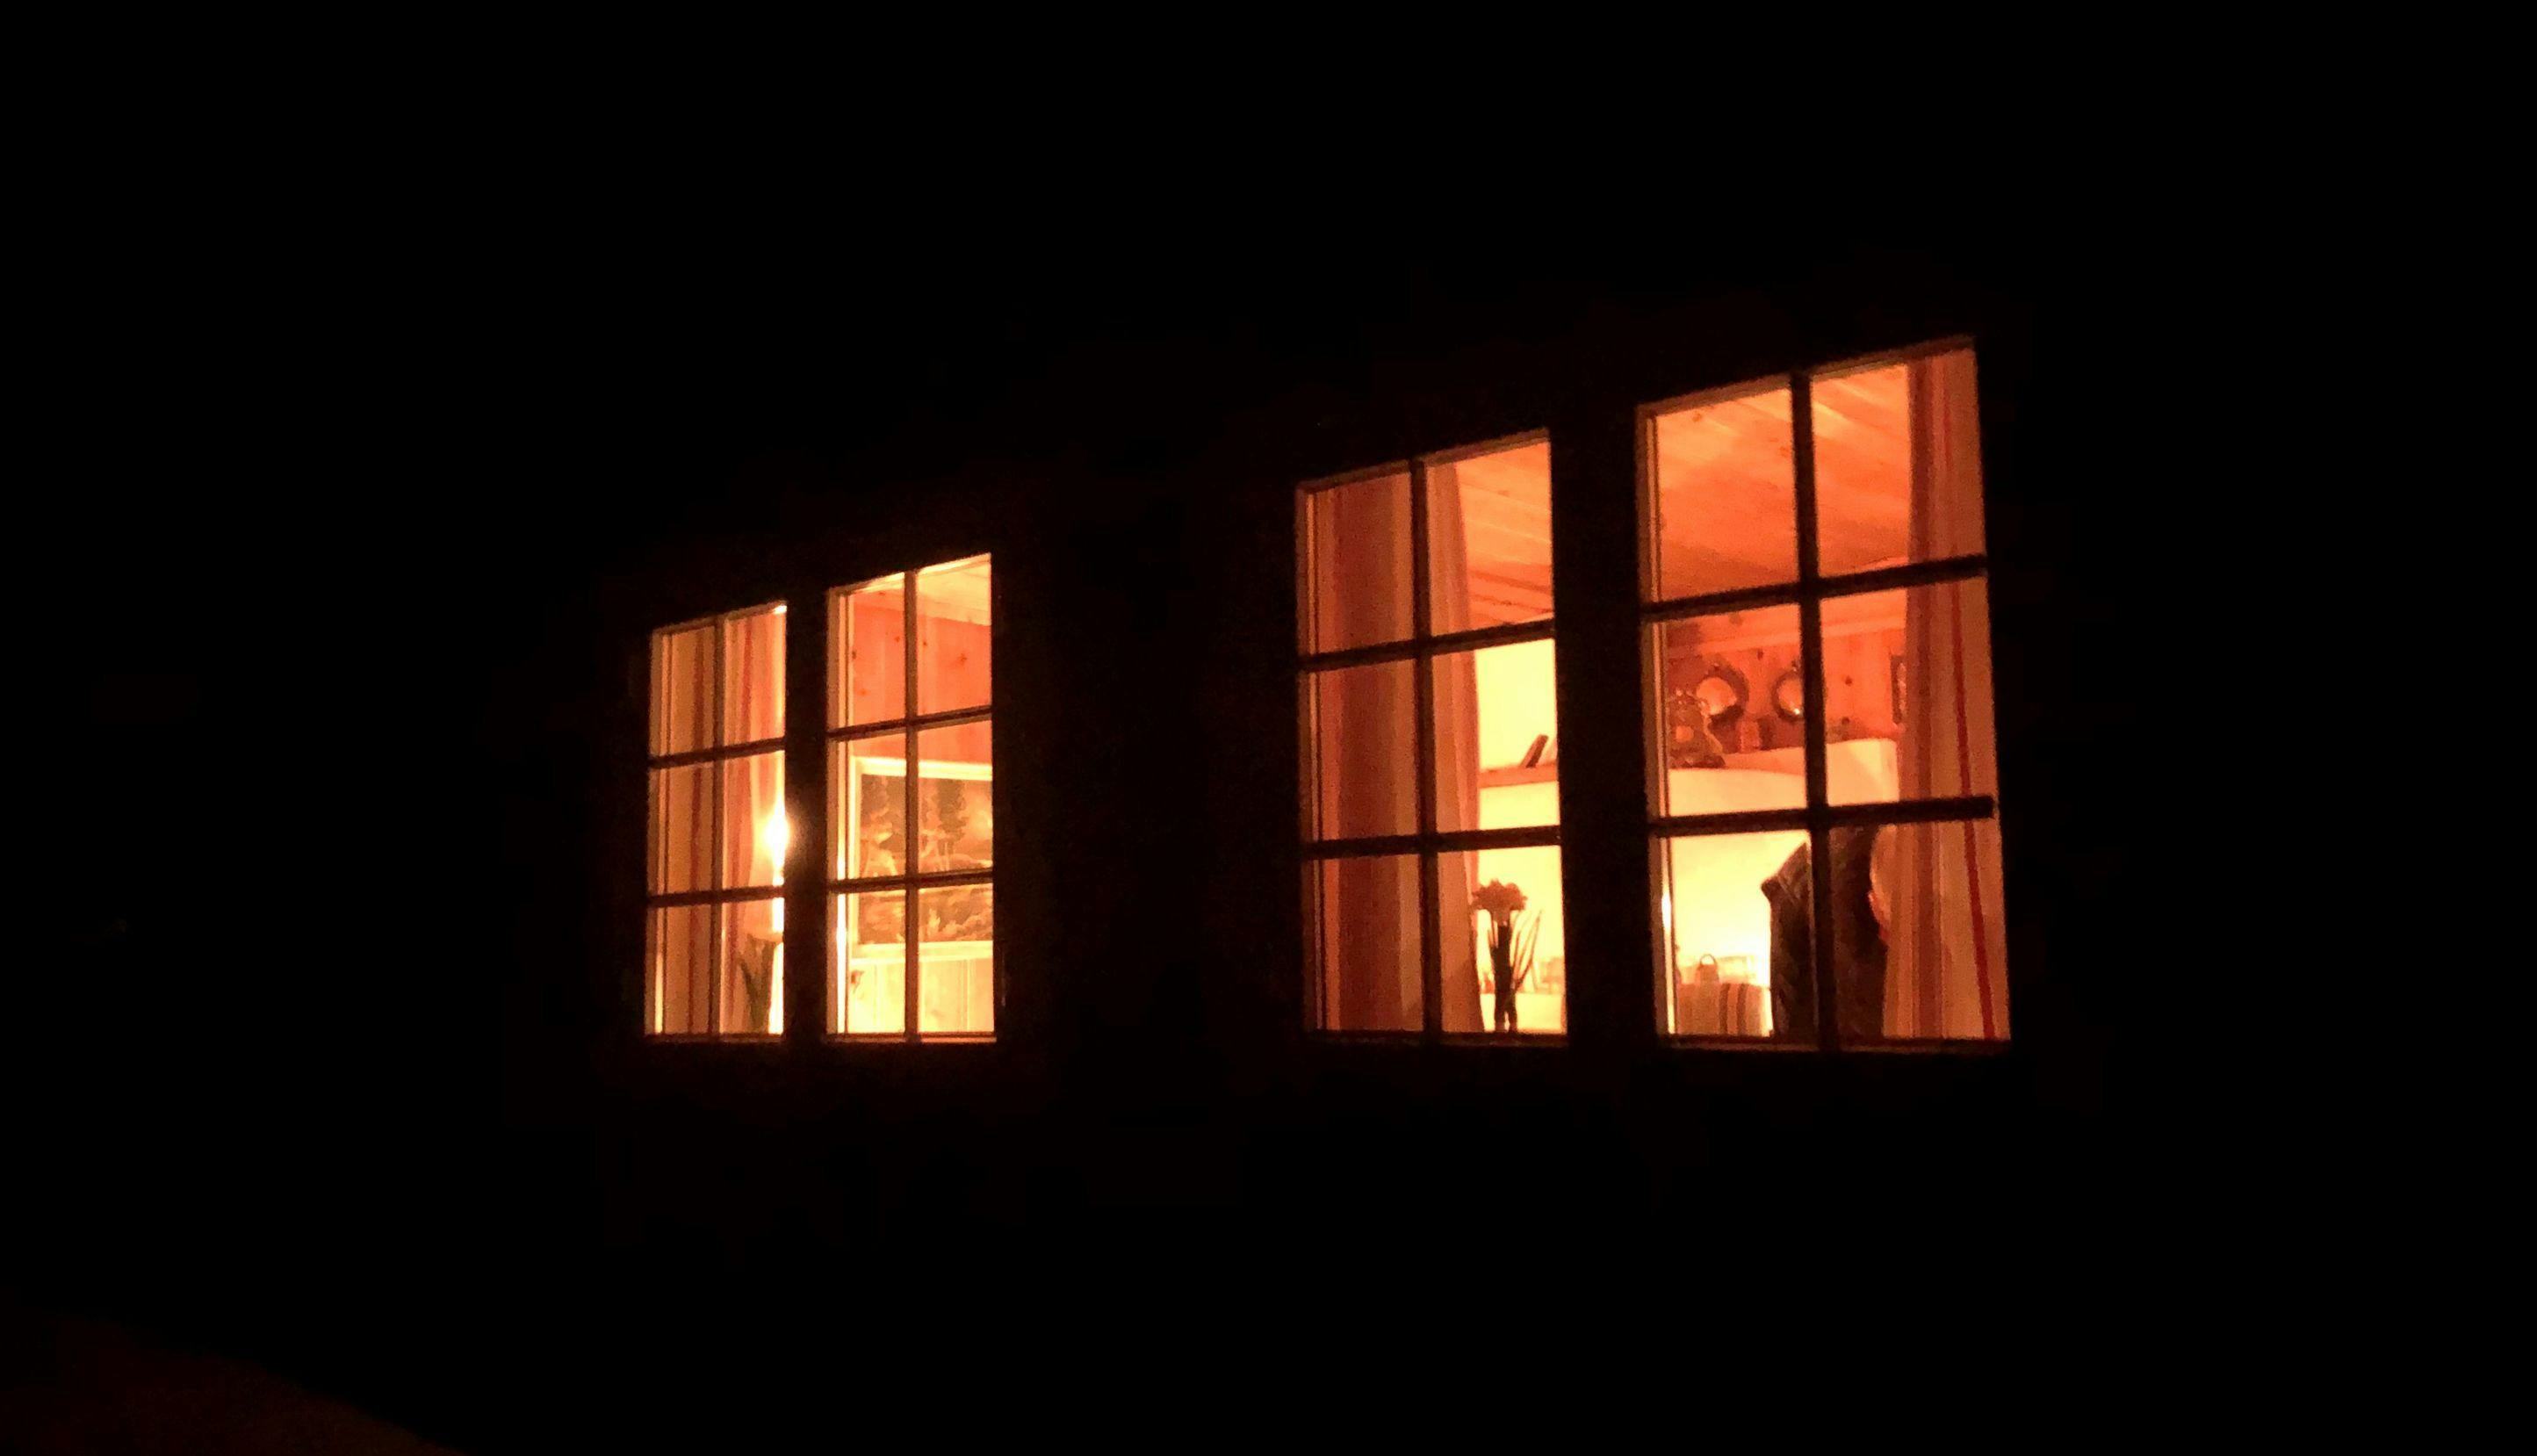 Lys fra hyttevinduer i mørket.